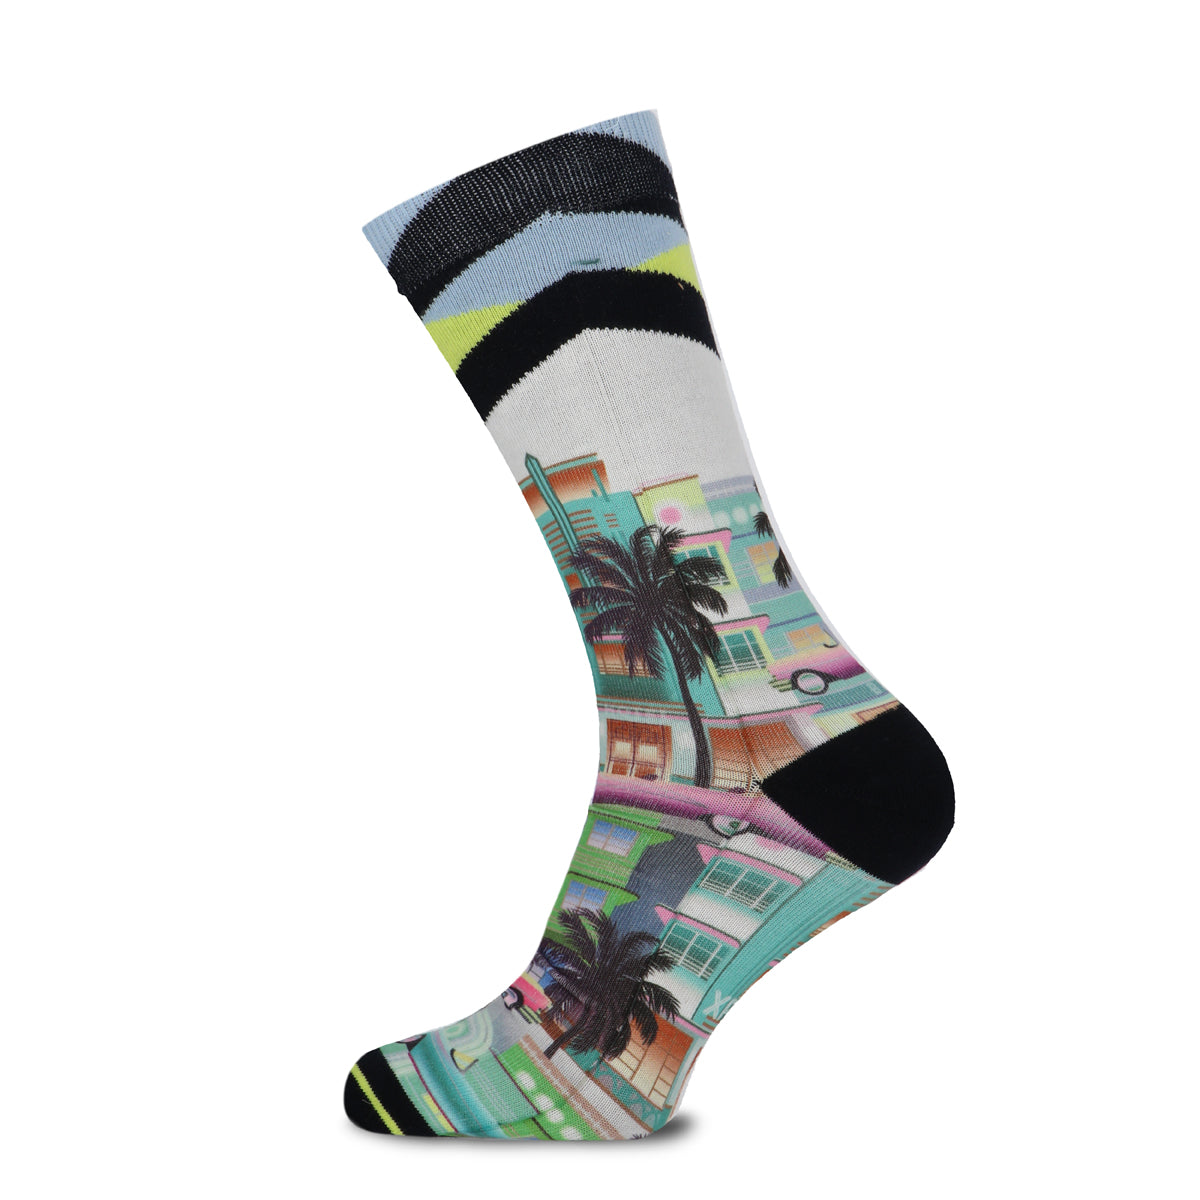 Crockett's Theme men's socks